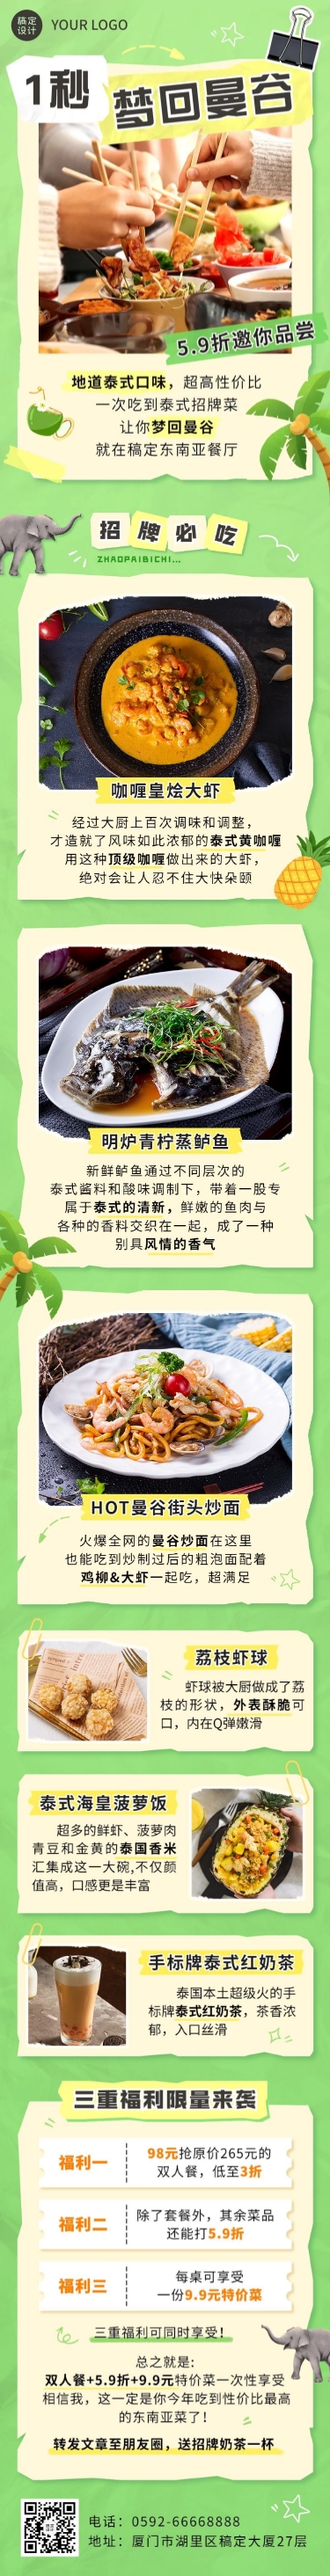 餐饮美食泰国料理菜品促销文章长图预览效果